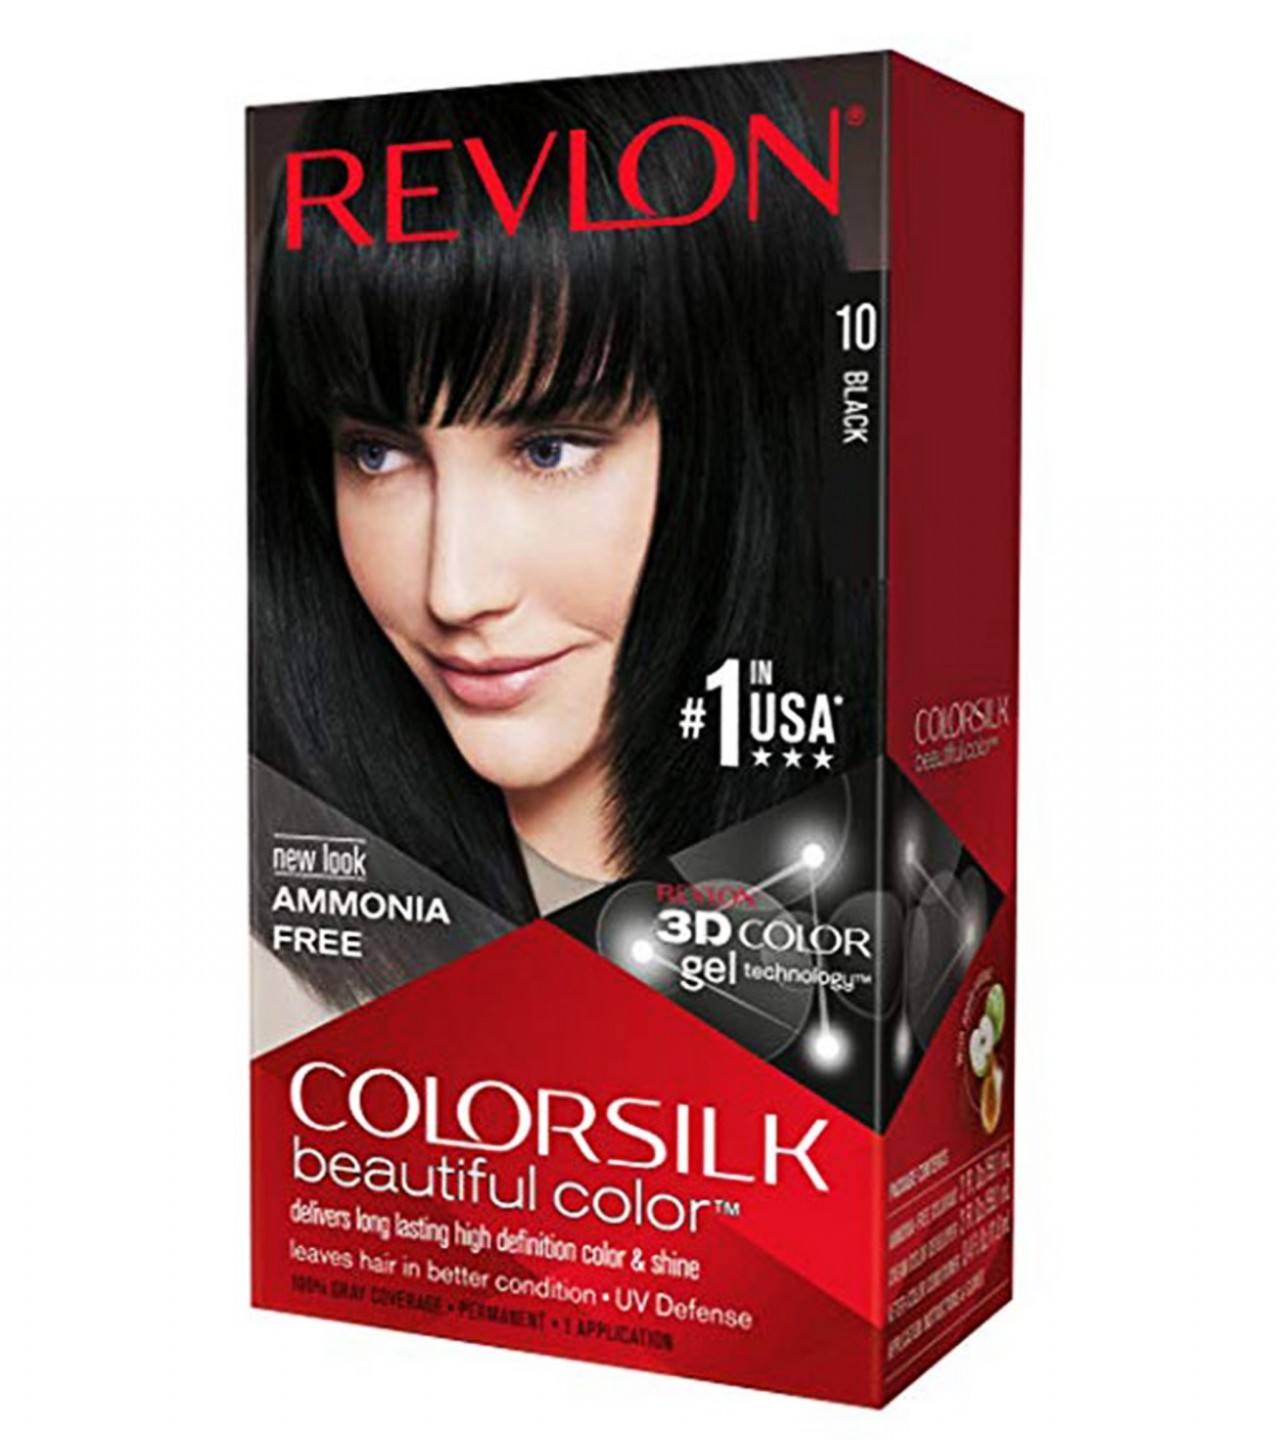 Revlon Color Silk Black Hair Color for Unisex - No. 10 - Black Color